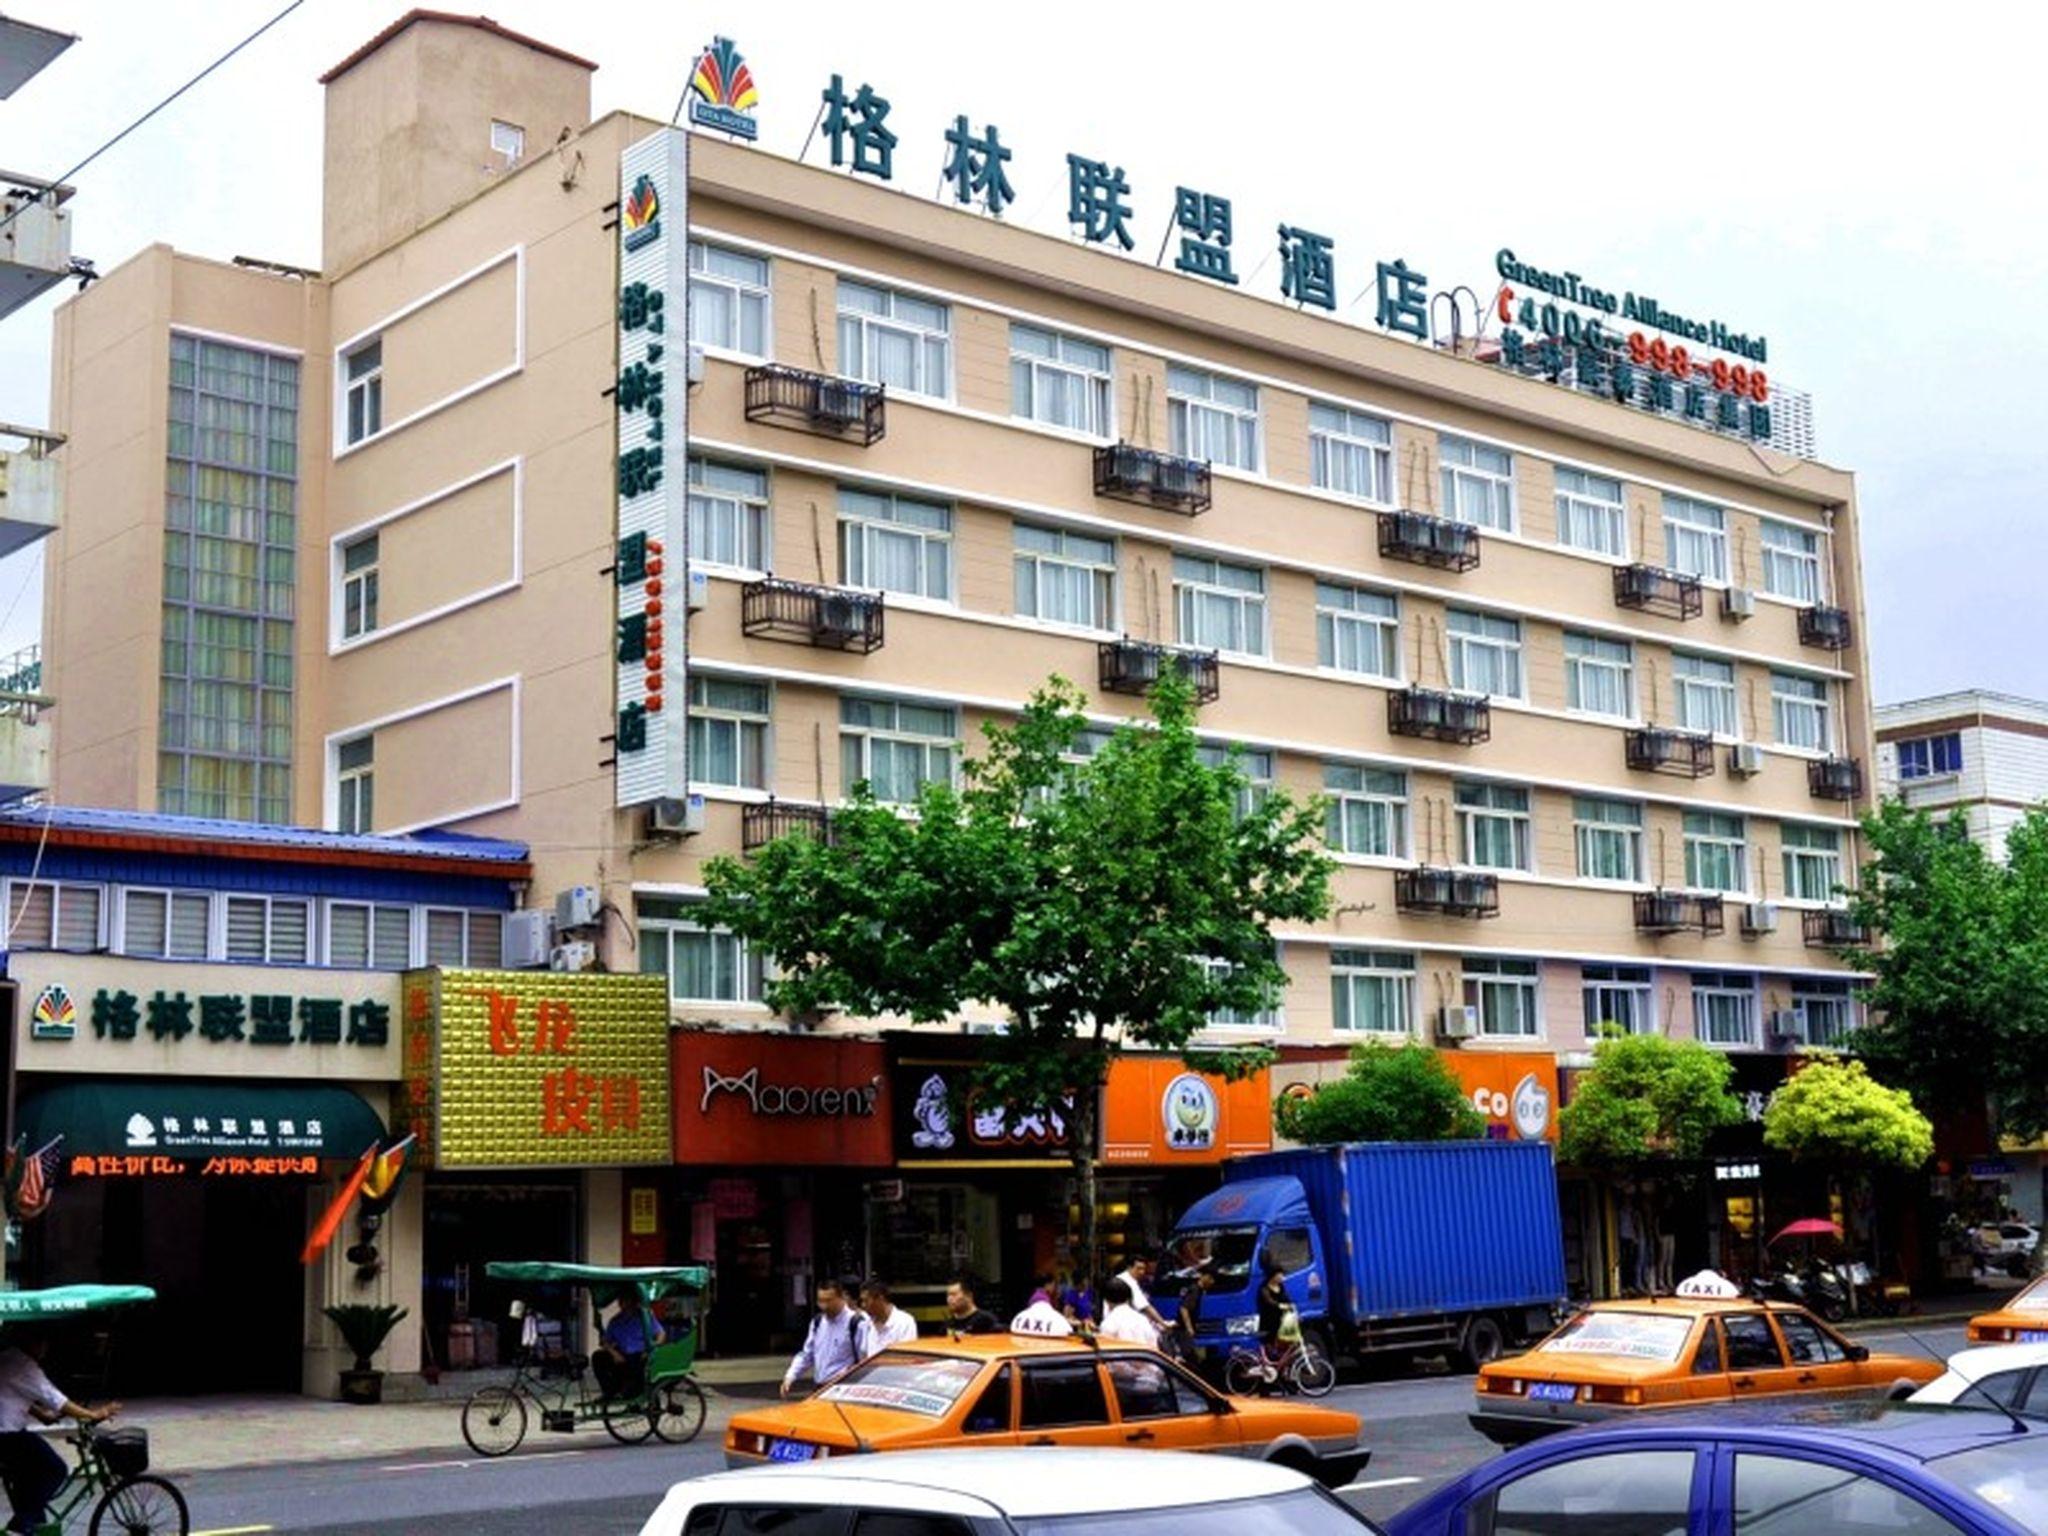 Hotel GreenTree Alliance Shanghai ChongMing BaYi Road Walking Street Hotel